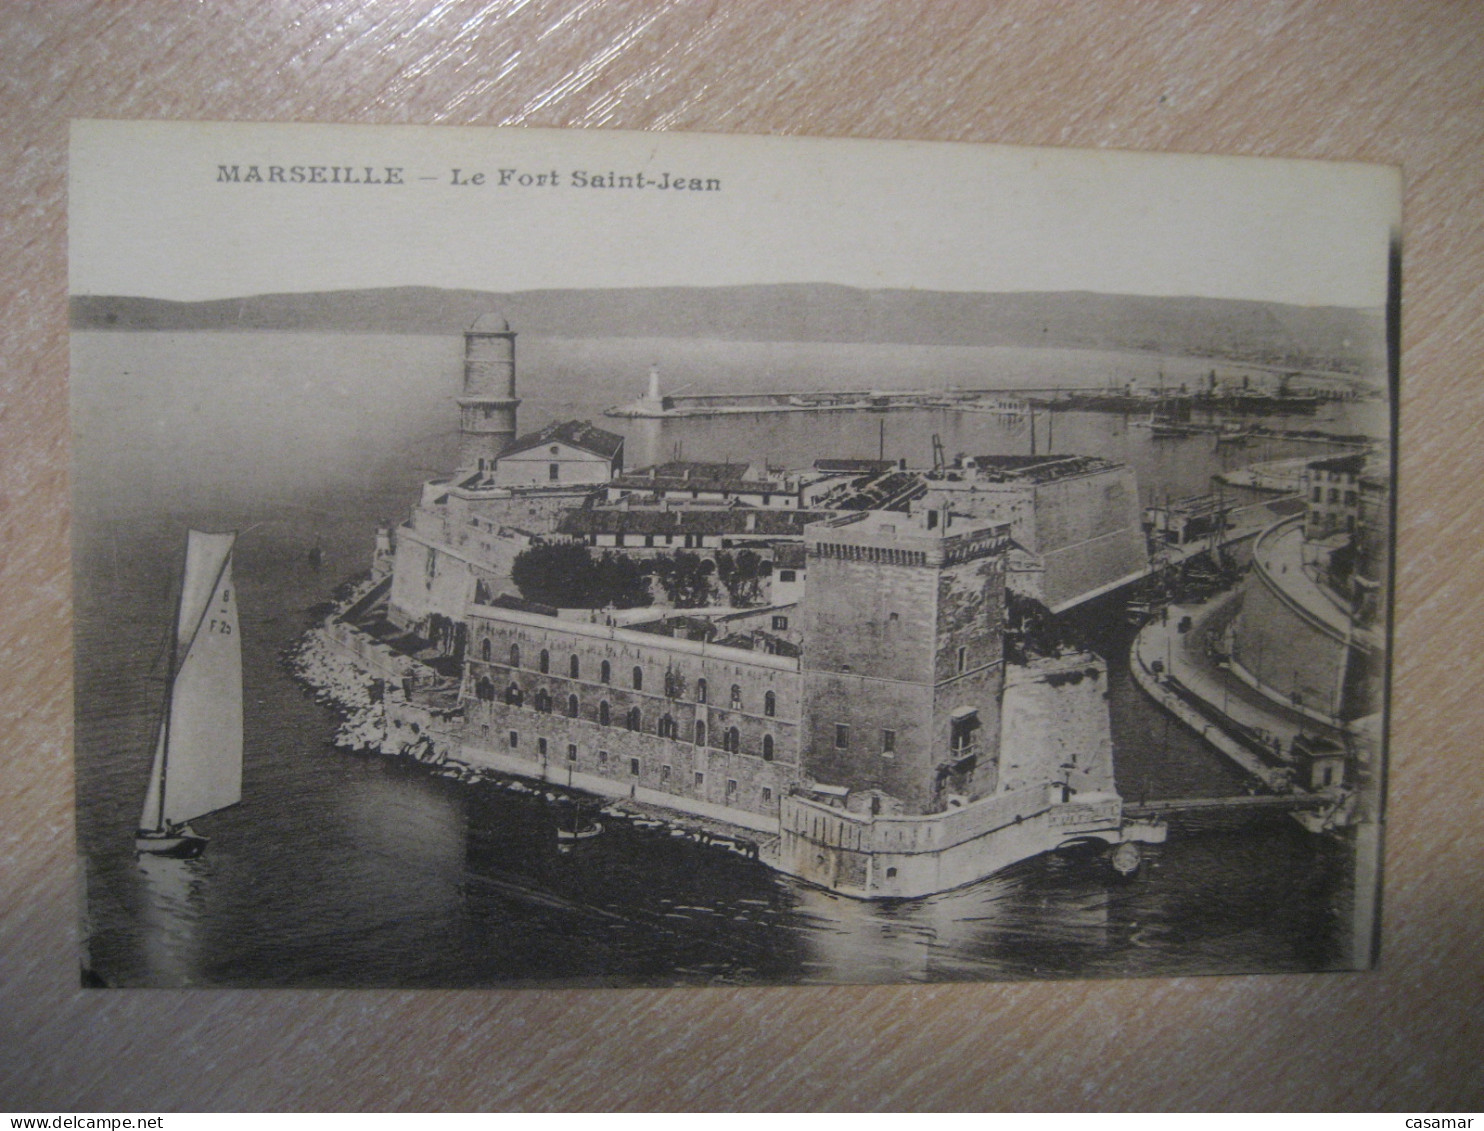 MARSEILLE Le Fort Saint-Jean Bouches-du-Rhone Postcard FRANCE - Non Classés